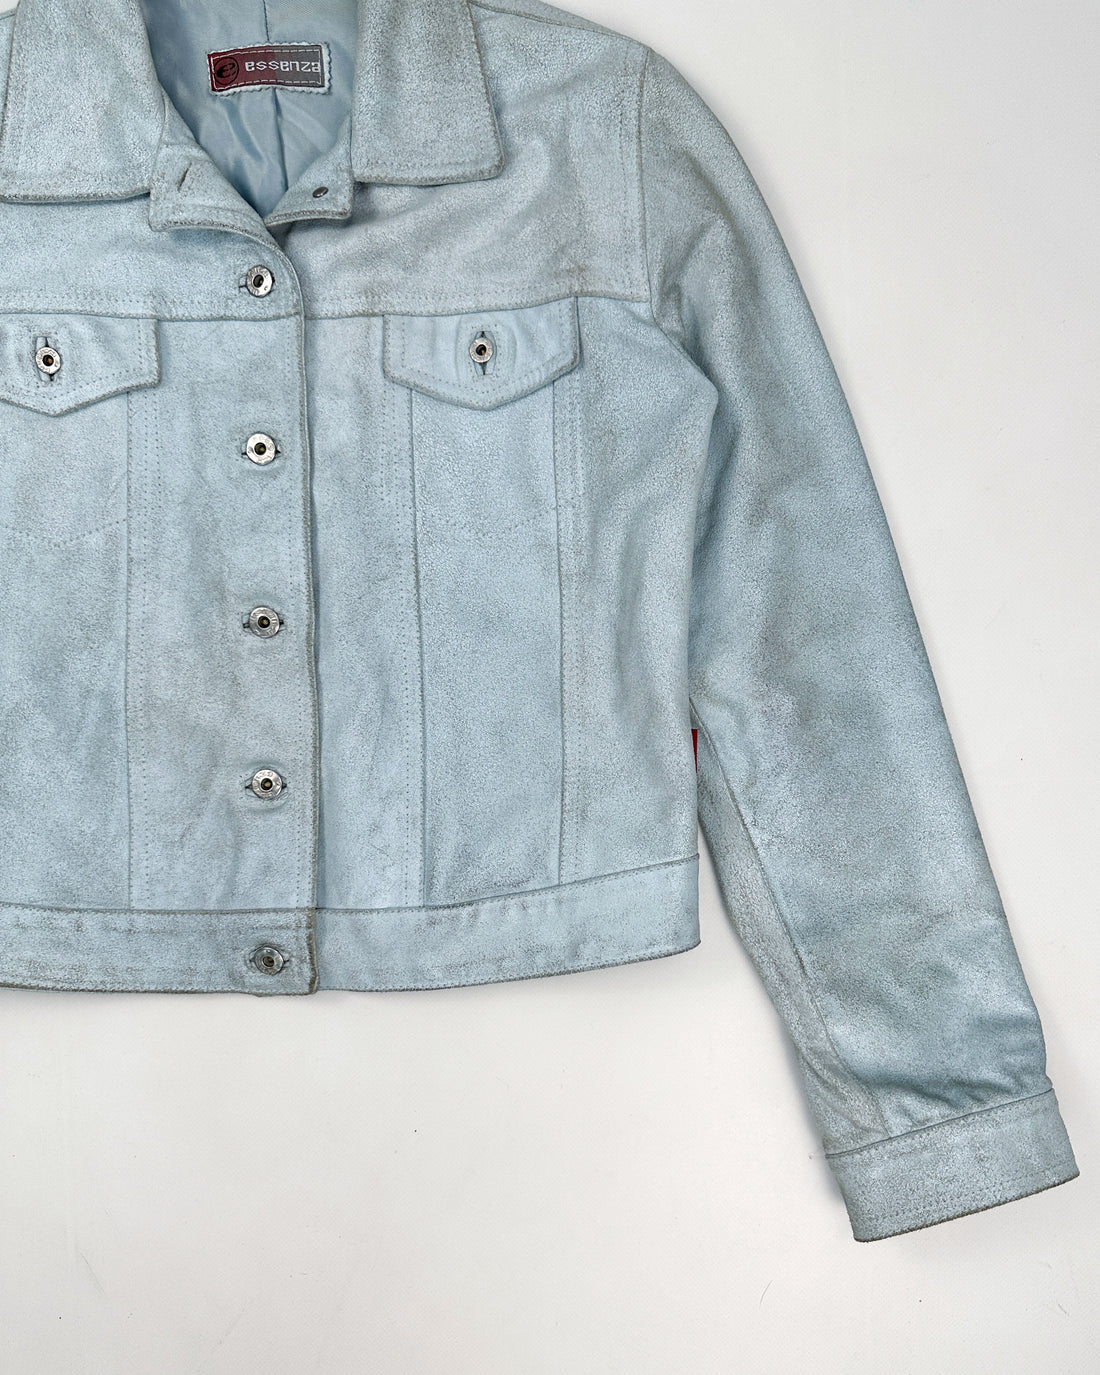 Essenza Baby Blue Cracked Leather Jacket 1990's